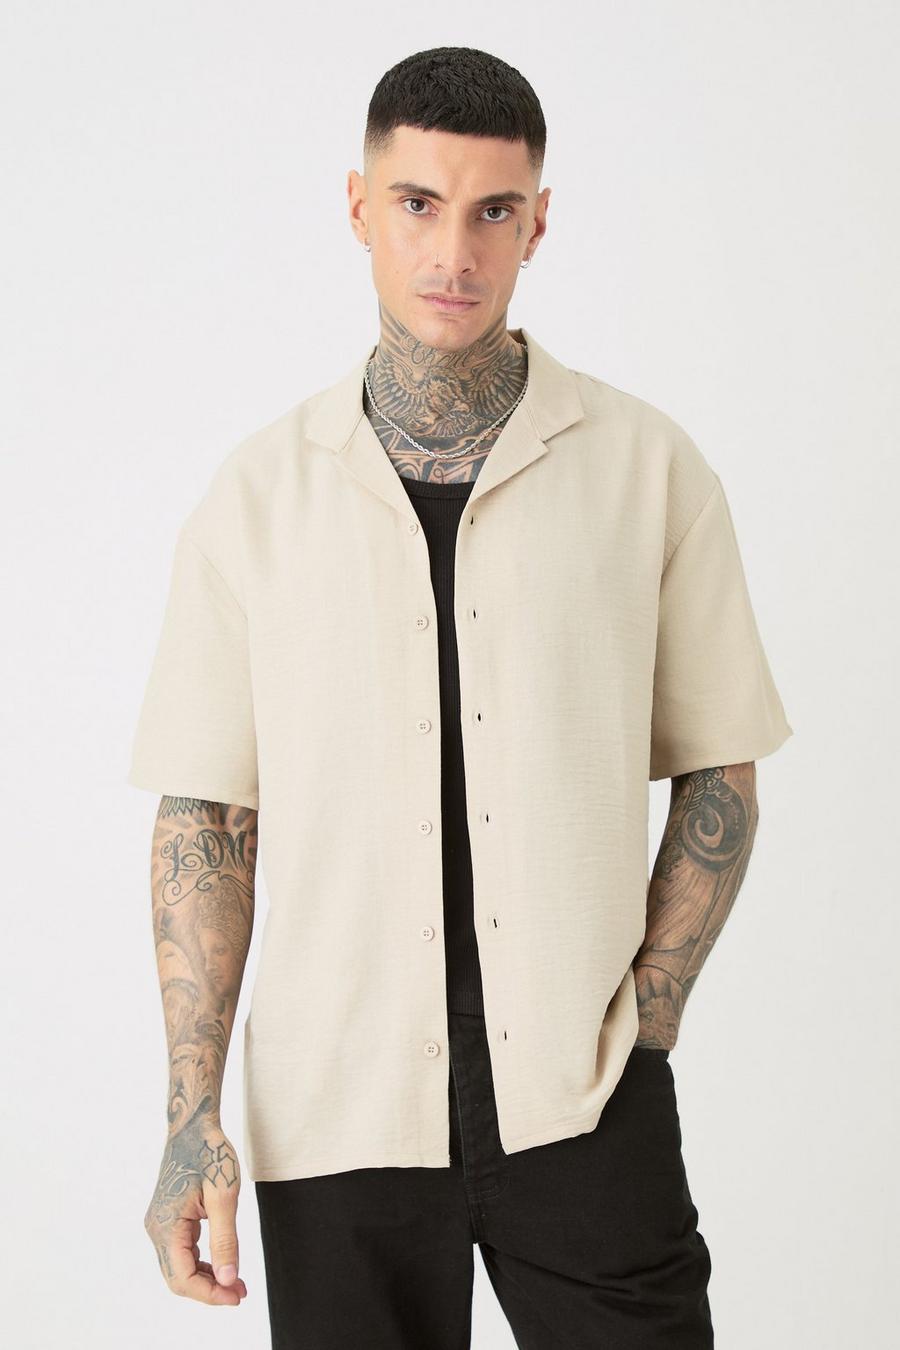 Camisa Tall de lino y manga corta en color natural con solapas